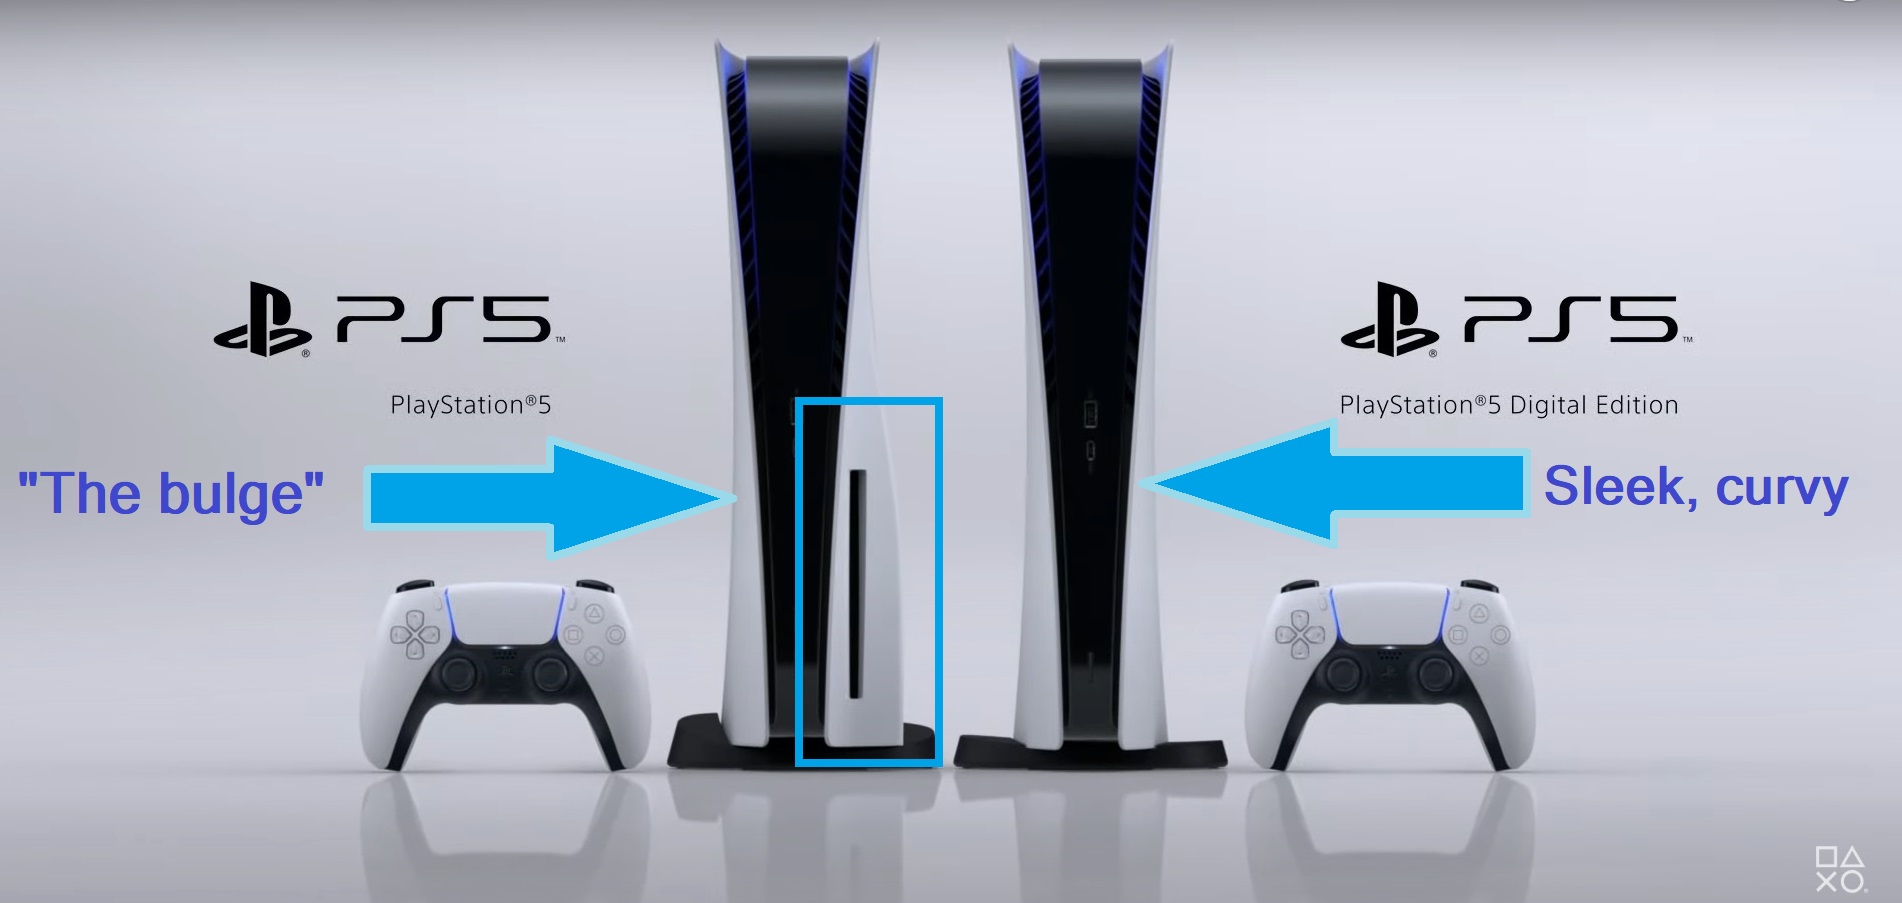 Edición digital de PS5 vs regular